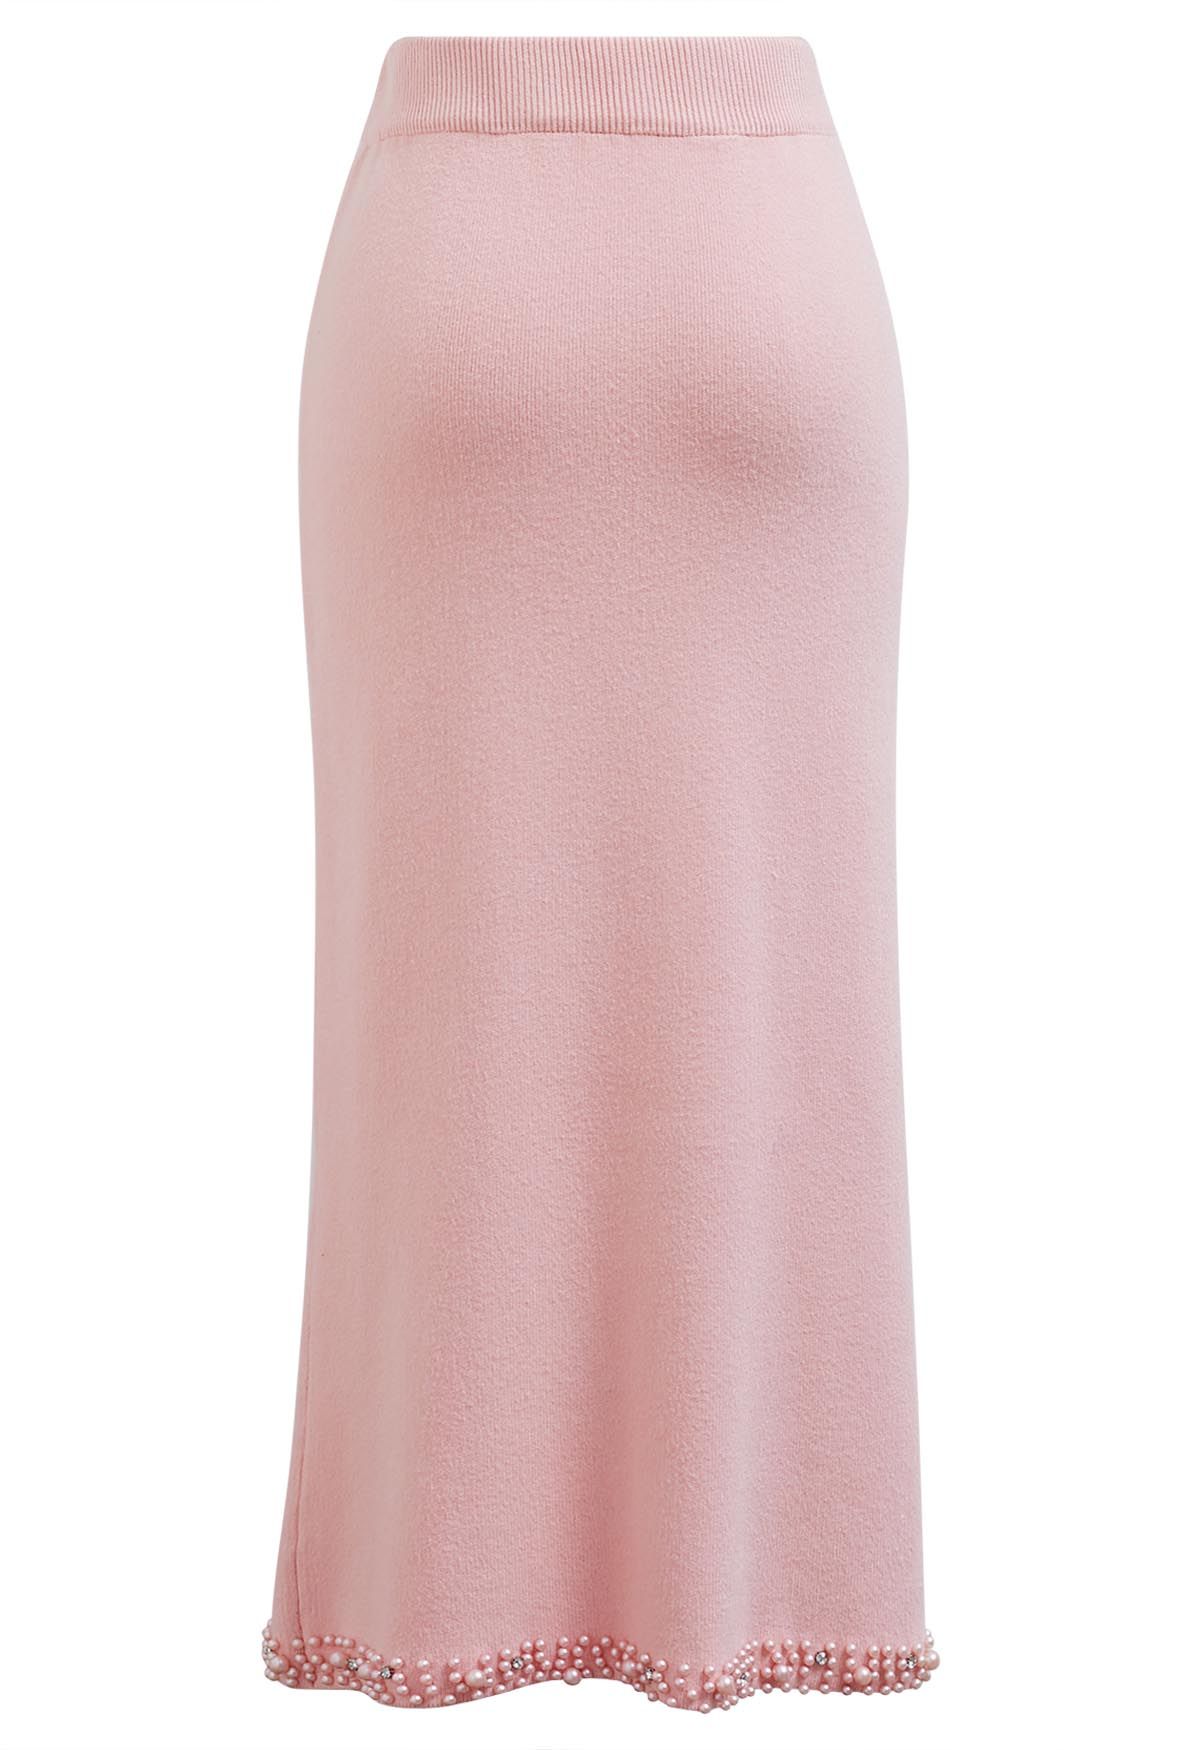 Pearl Embellished Slit Hem Knit Pencil Skirt in Light Pink - Retro ...